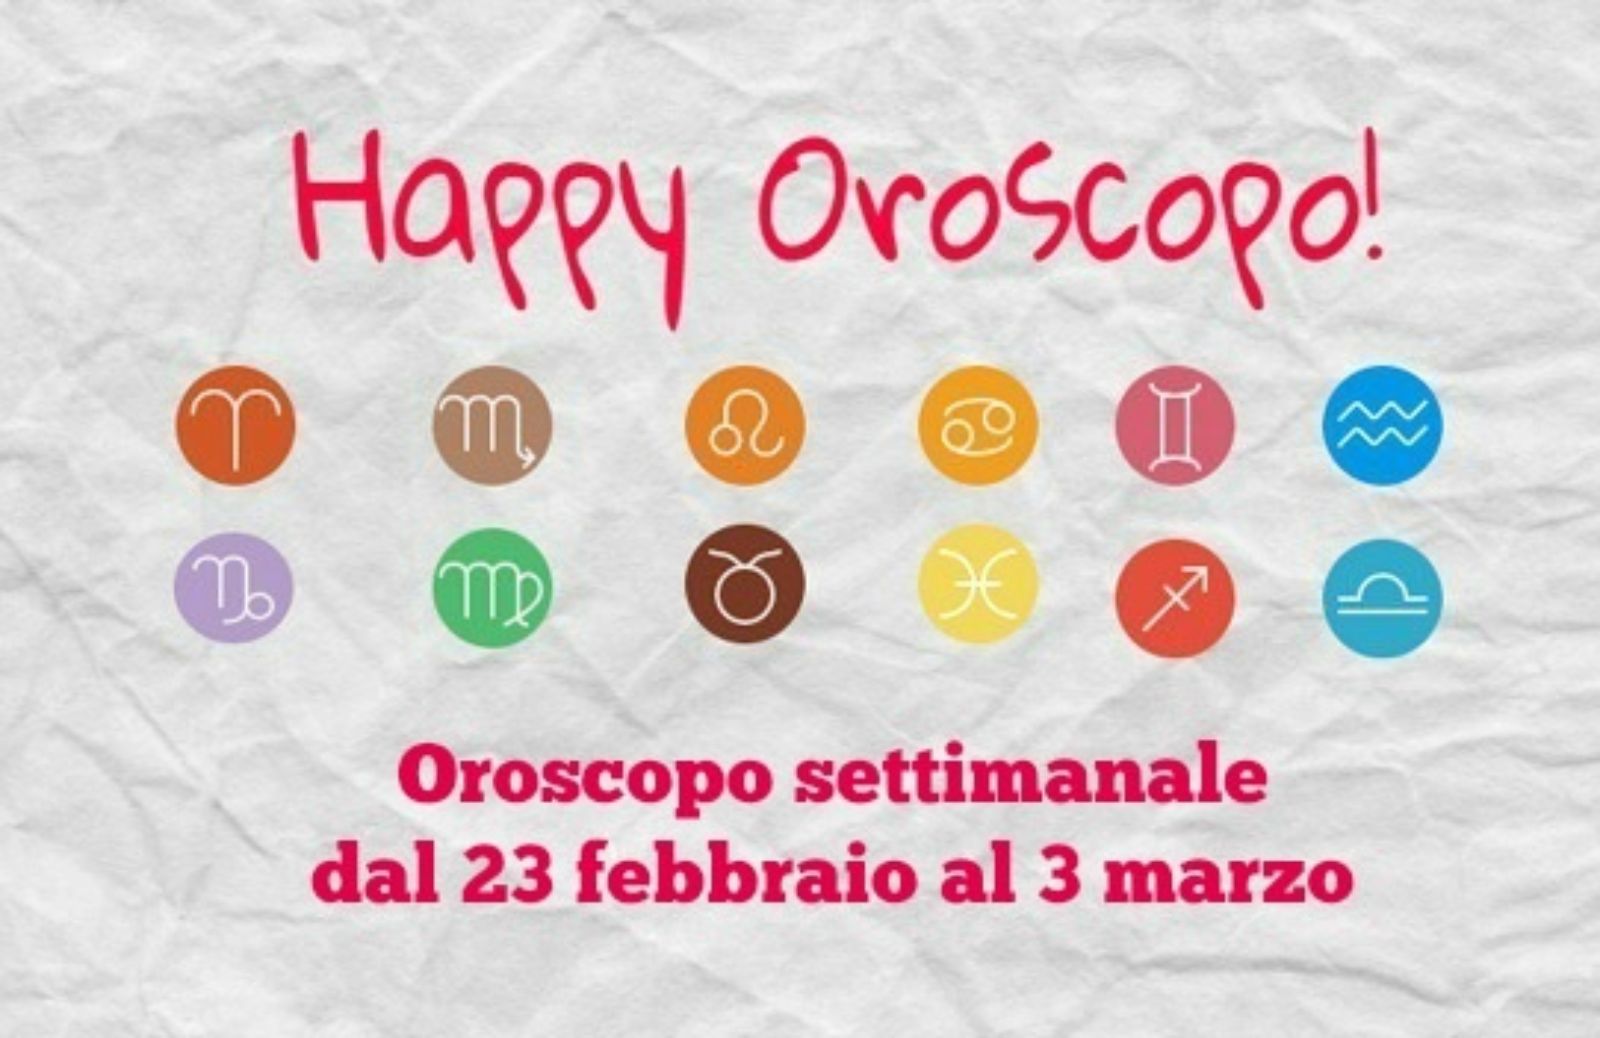 Happy Oroscopo della settimana: cosa dicono le stelle dal 23 febbraio al 3 marzo segno per segno